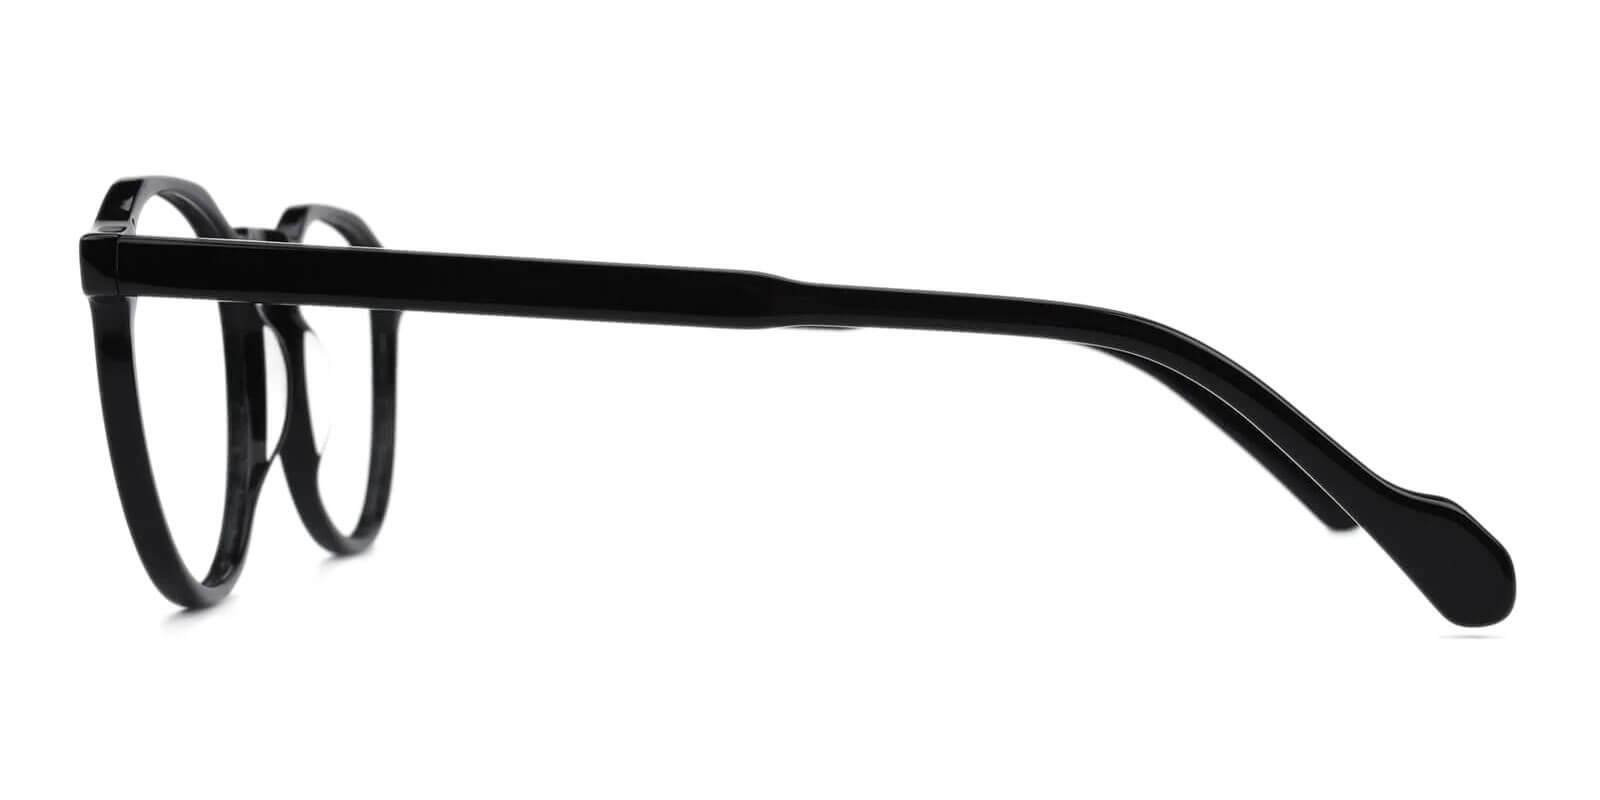 Carnival Black Acetate Eyeglasses , SpringHinges , UniversalBridgeFit Frames from ABBE Glasses